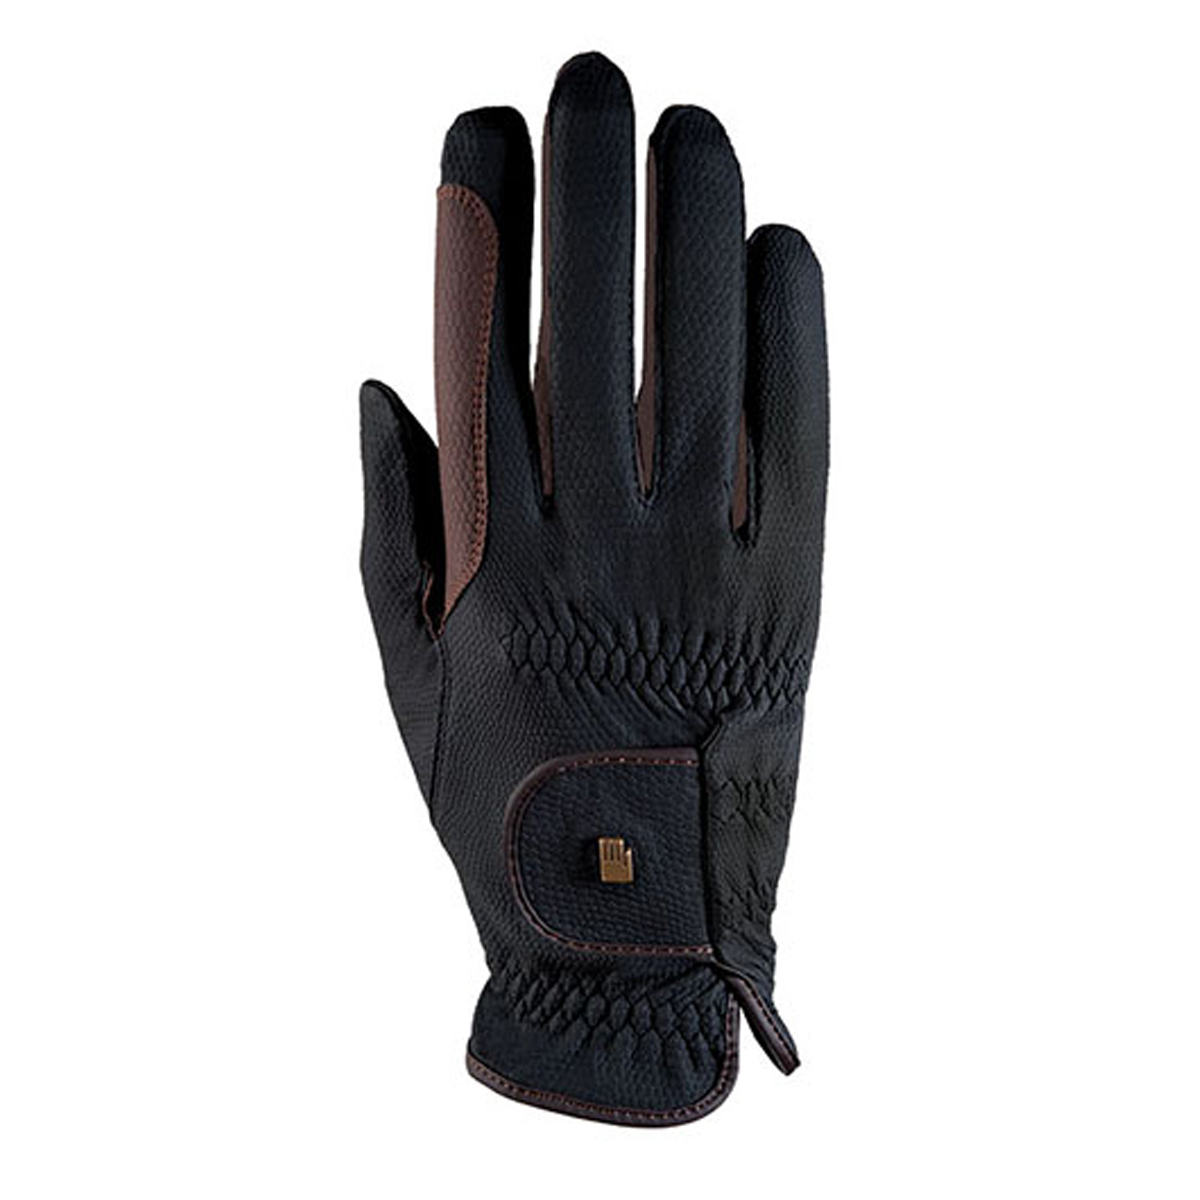 Handschoenen Roeckl Malta Grip Bicolor, 6 in black/brown